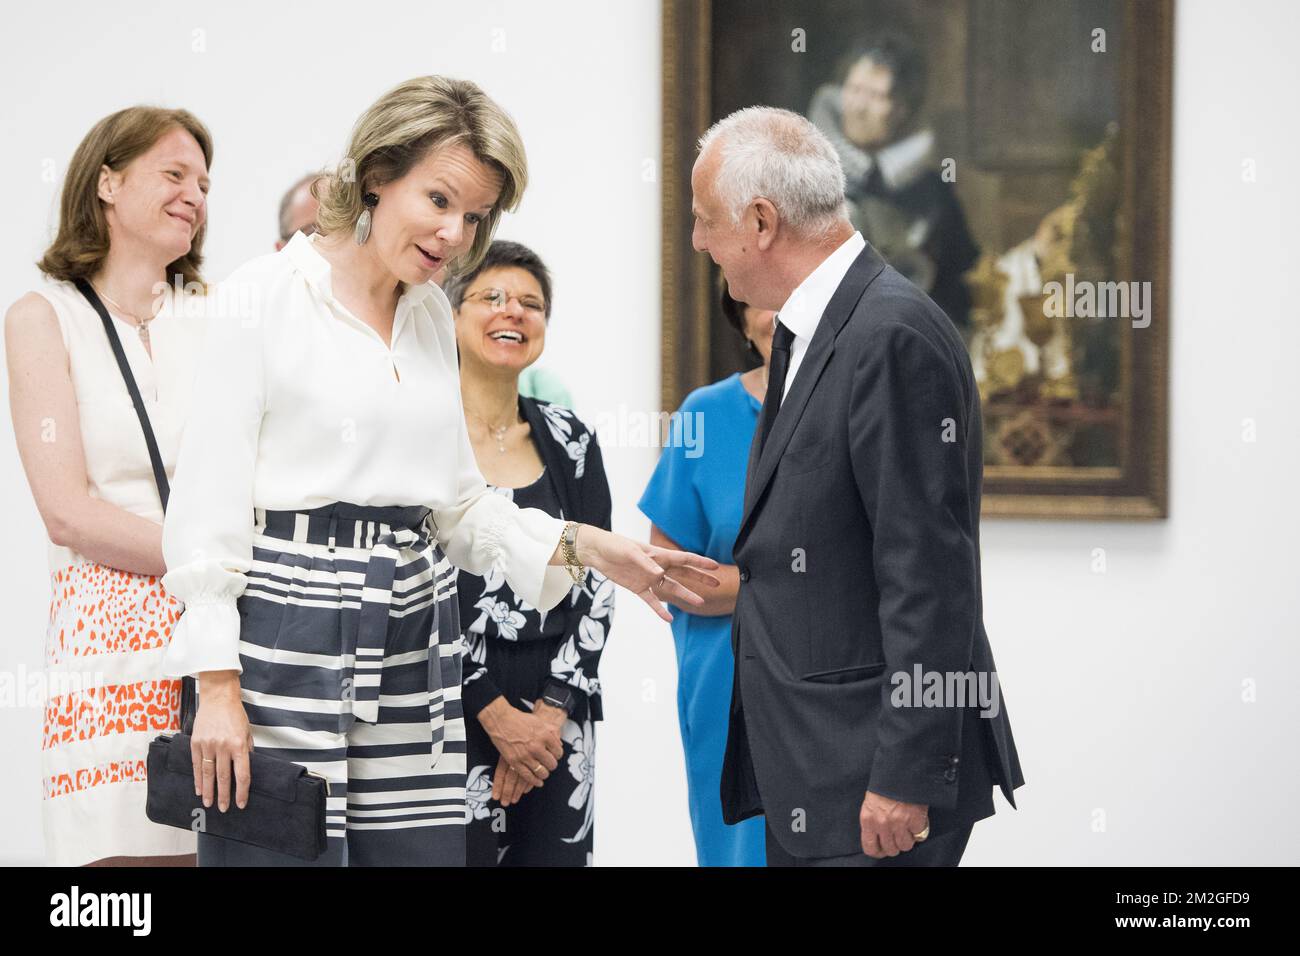 La regina Mathilde del Belgio e l'artista Luc Tuymans hanno raffigurato durante una visita ad una mostra, del festival culturale urbano, chiamato 'Antwerp Barocco 2018. Rubens ispira', nel museo di Anversa MHKA, martedì 03 luglio 2018. FOTO DI BELGA JASPER JACOBS Foto Stock